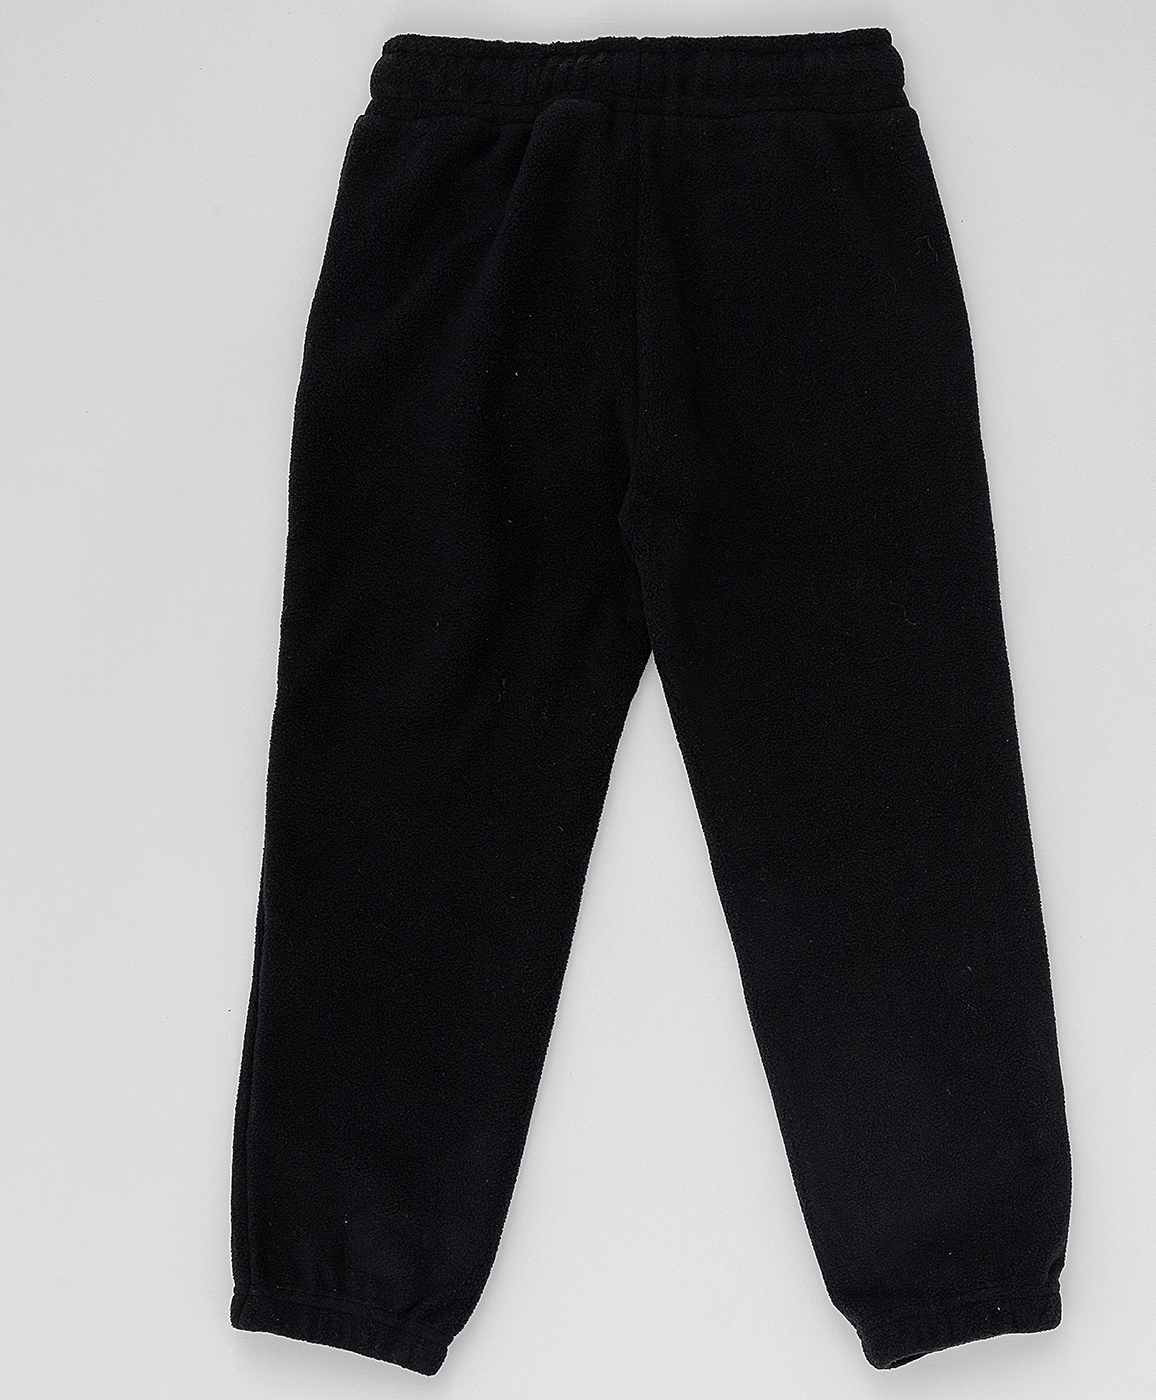 Черные флисовые брюки Button Blue 220BBBA56010800, размер 134, цвет черный на резинке - фото 2